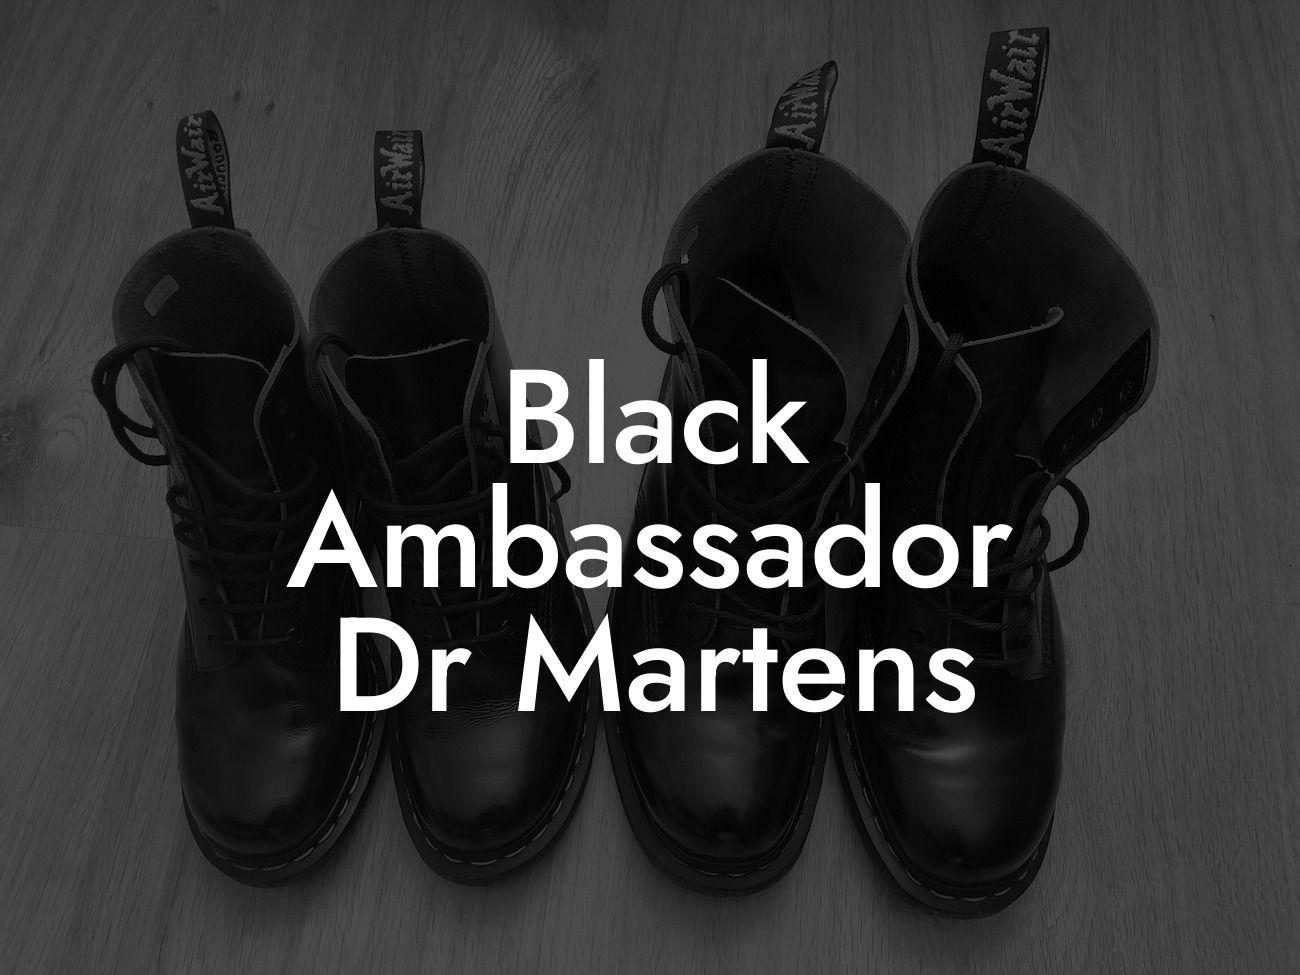 Black Ambassador Dr Martens